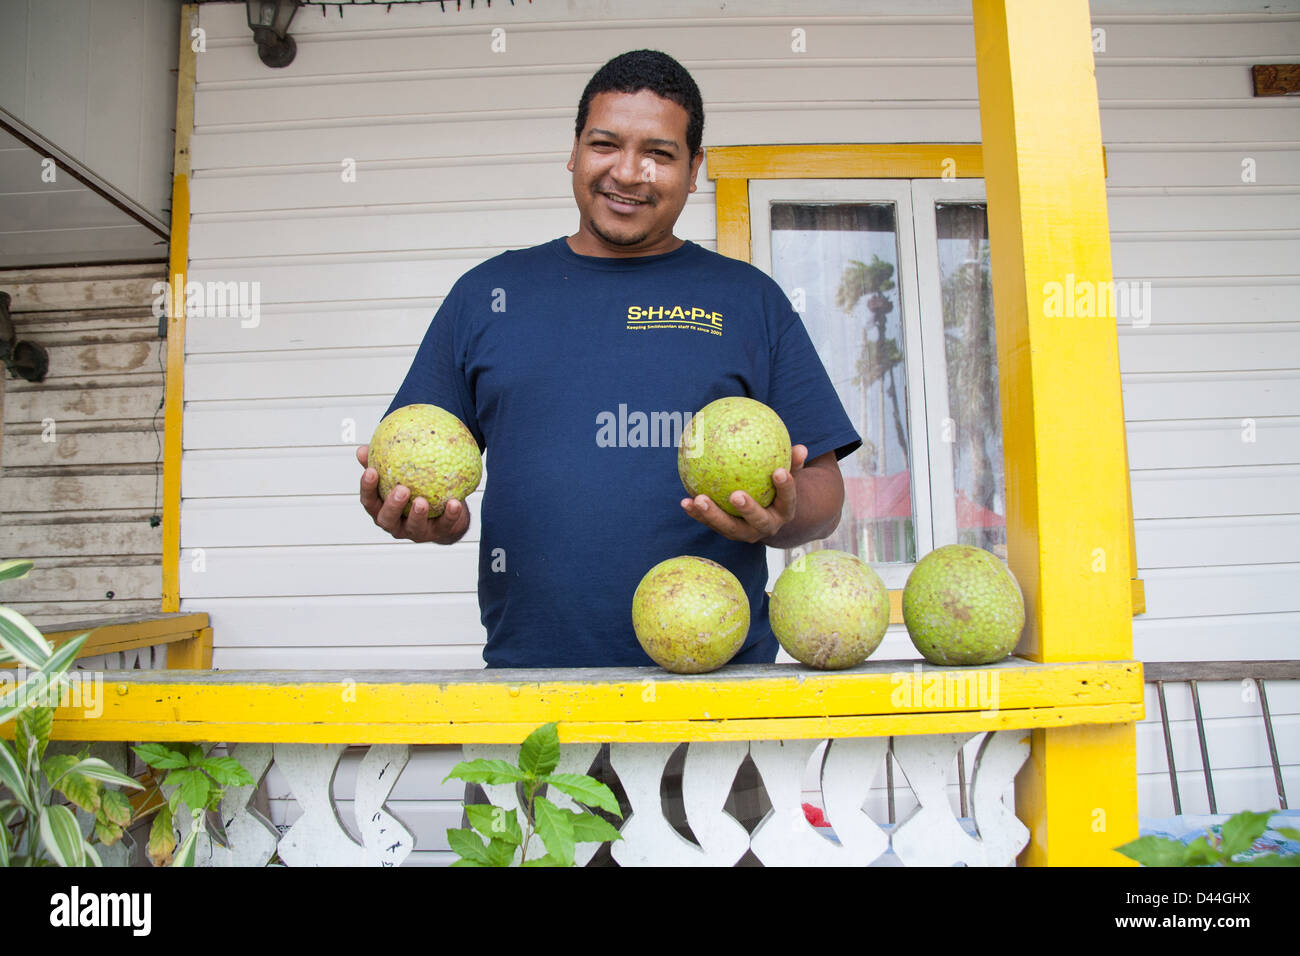 Homme panaméen smiling, grand, vert, jaune de fruits exotiques. Banque D'Images